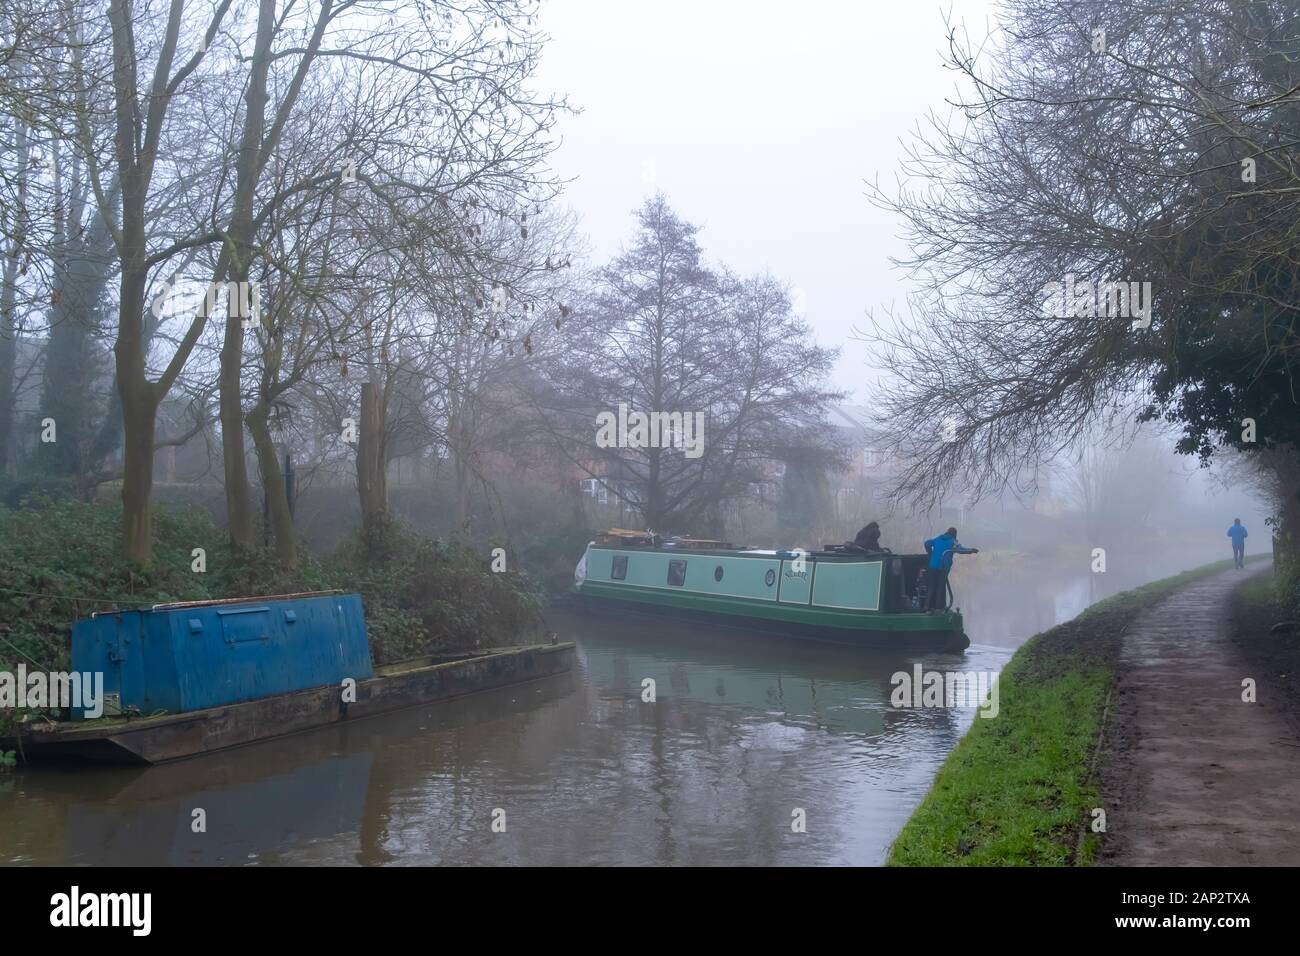 Suchergebnisse Web-Ergebnisse Trent und Mersey Canal in Stone, Stafffordshire, England mit einem schmalen Boot oder Schiff. Foto aufgenommen an einem nebligen Morgen Stockfoto